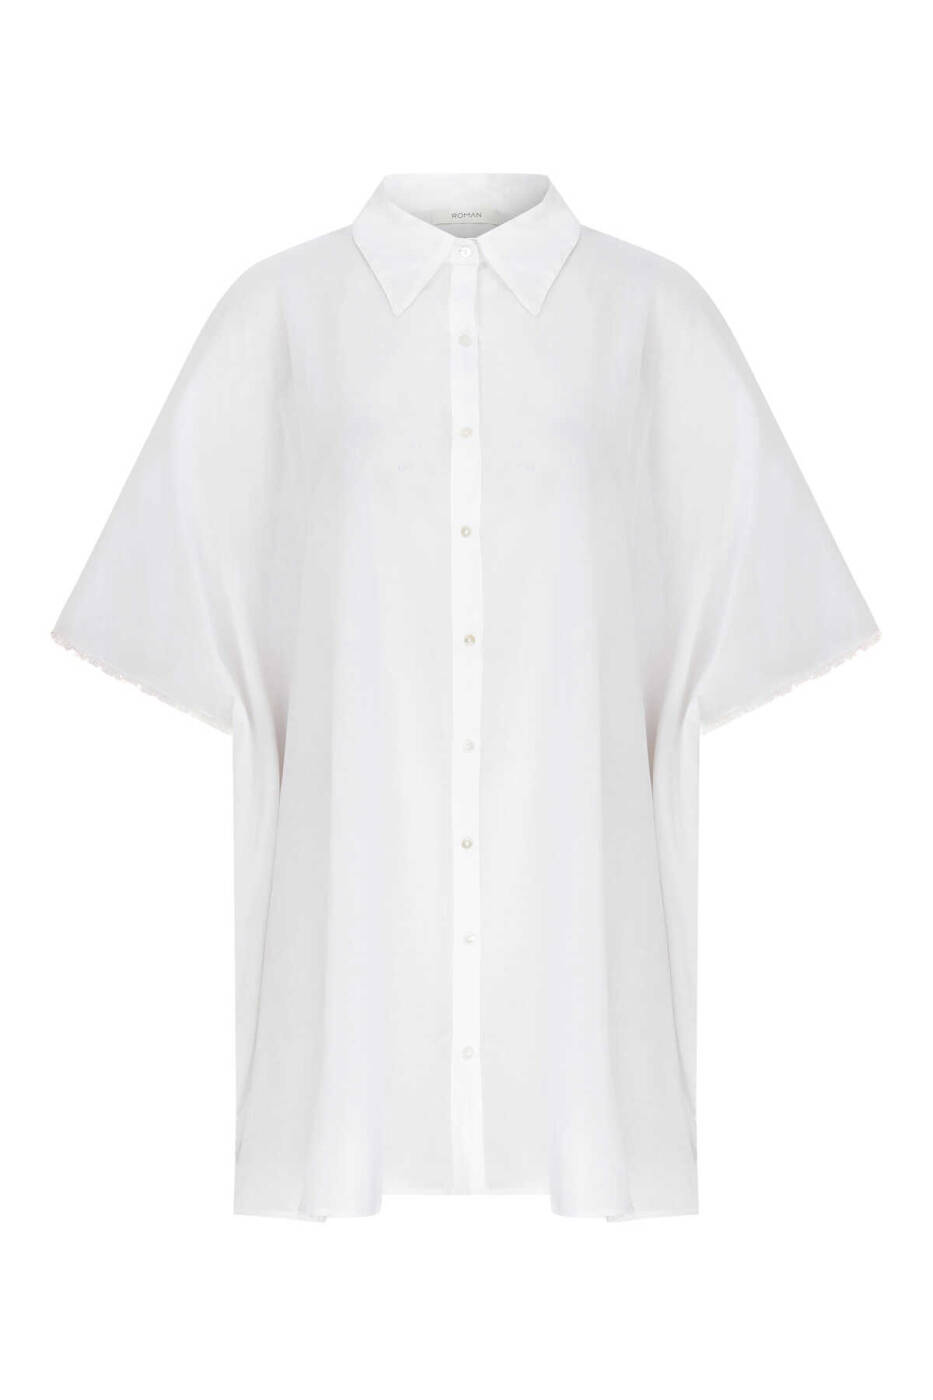 Kadın Gömlek Elbise Beyaz - 4